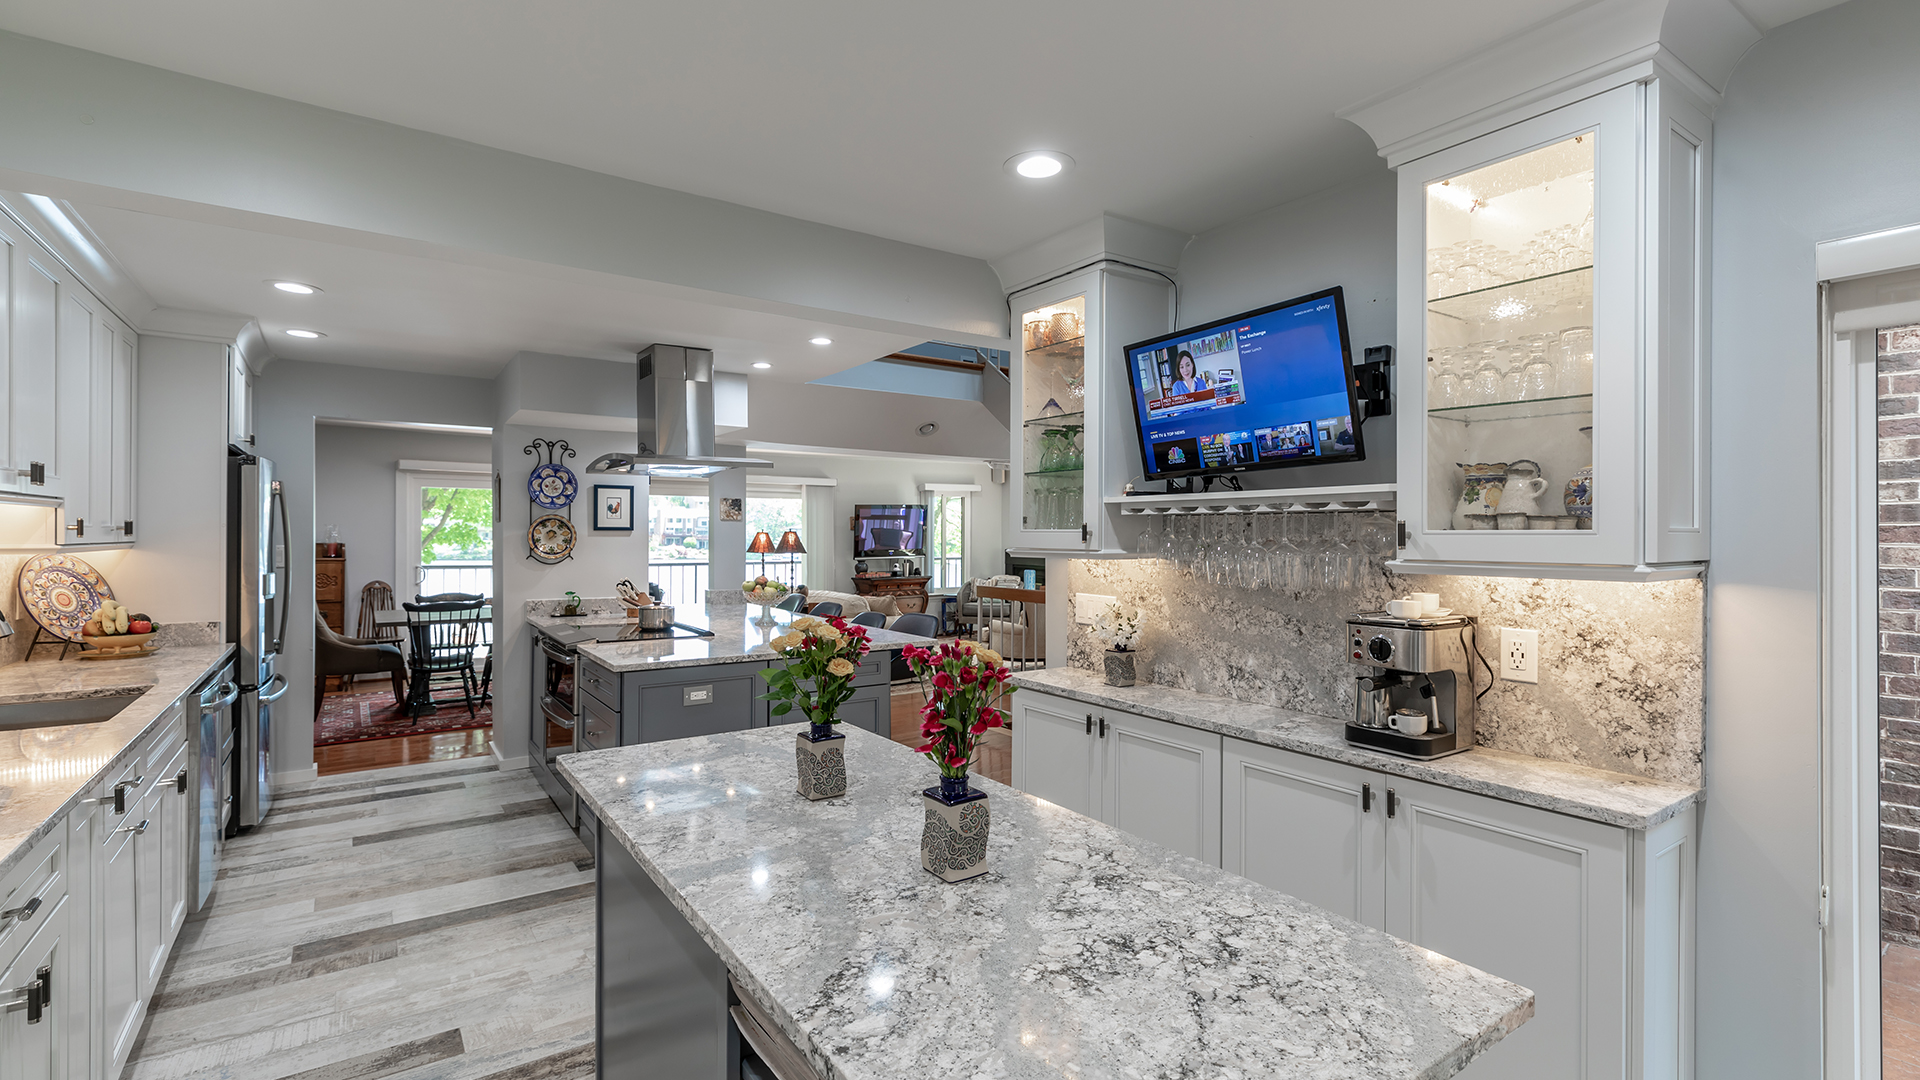 2021 NARI Metro DC Coty GRAND AWARD Residential Kitchen $30,000 to $60,000